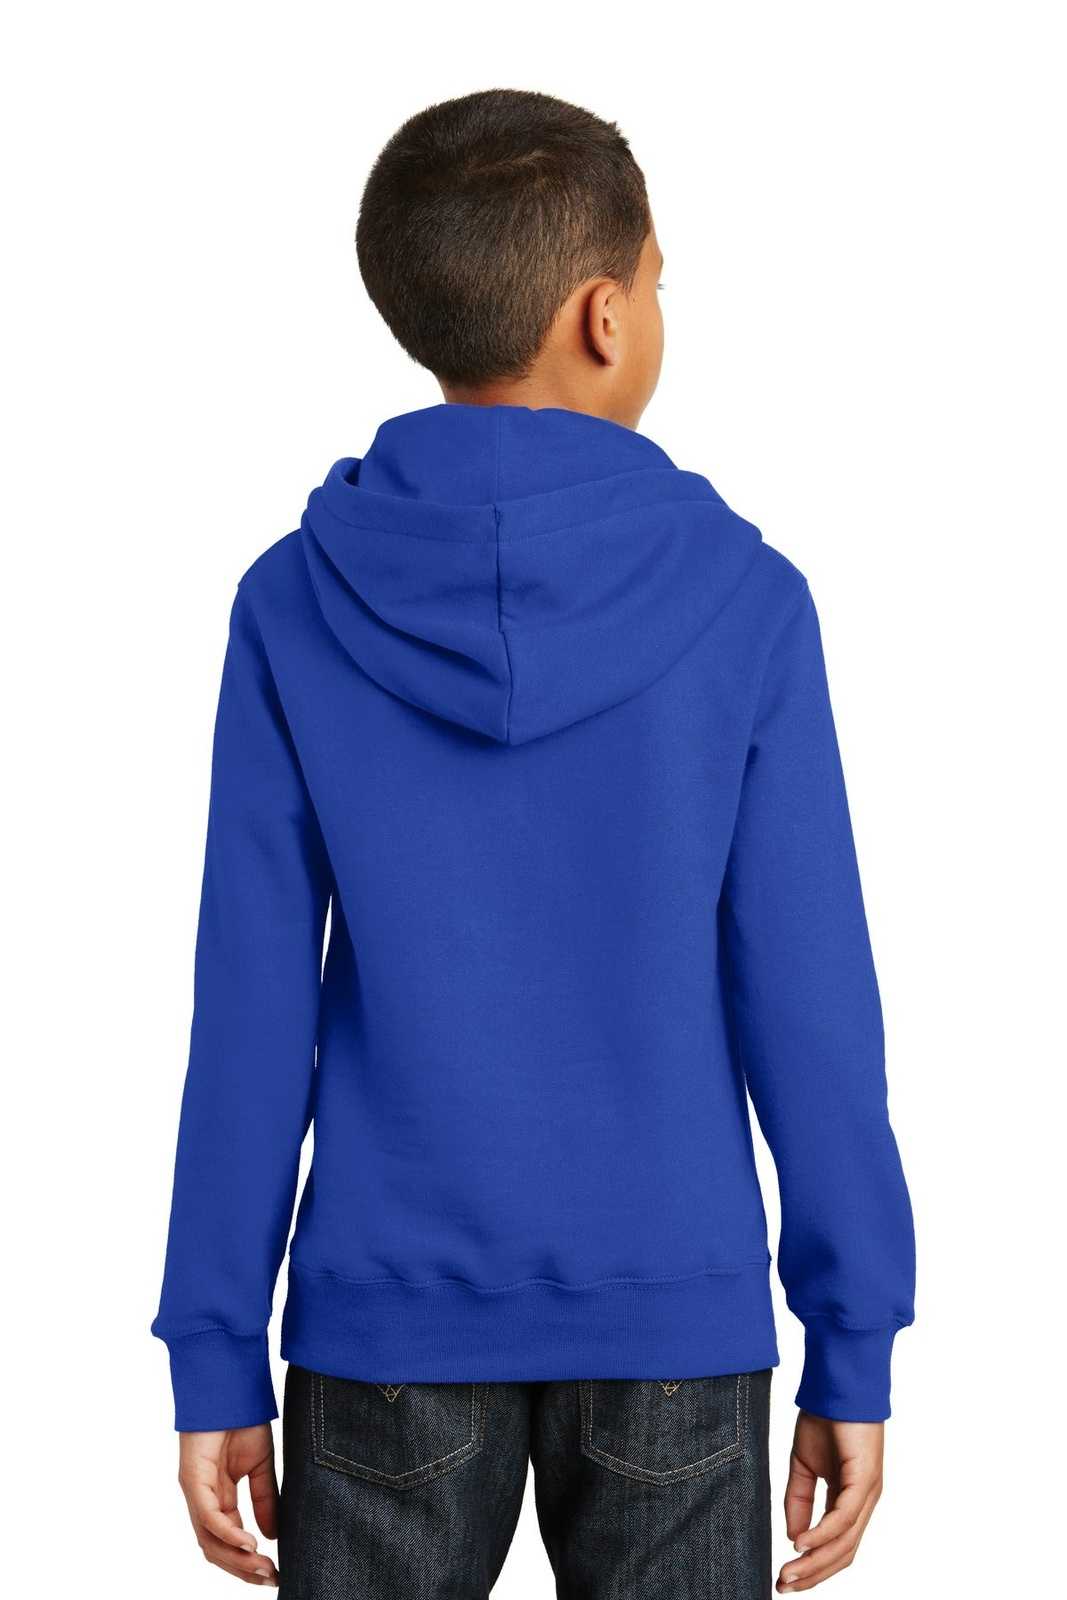 Port & Company PC850YH Youth Fan Favorite Fleece Pullover Hooded Sweatshirt - True Royal - HIT a Double - 1